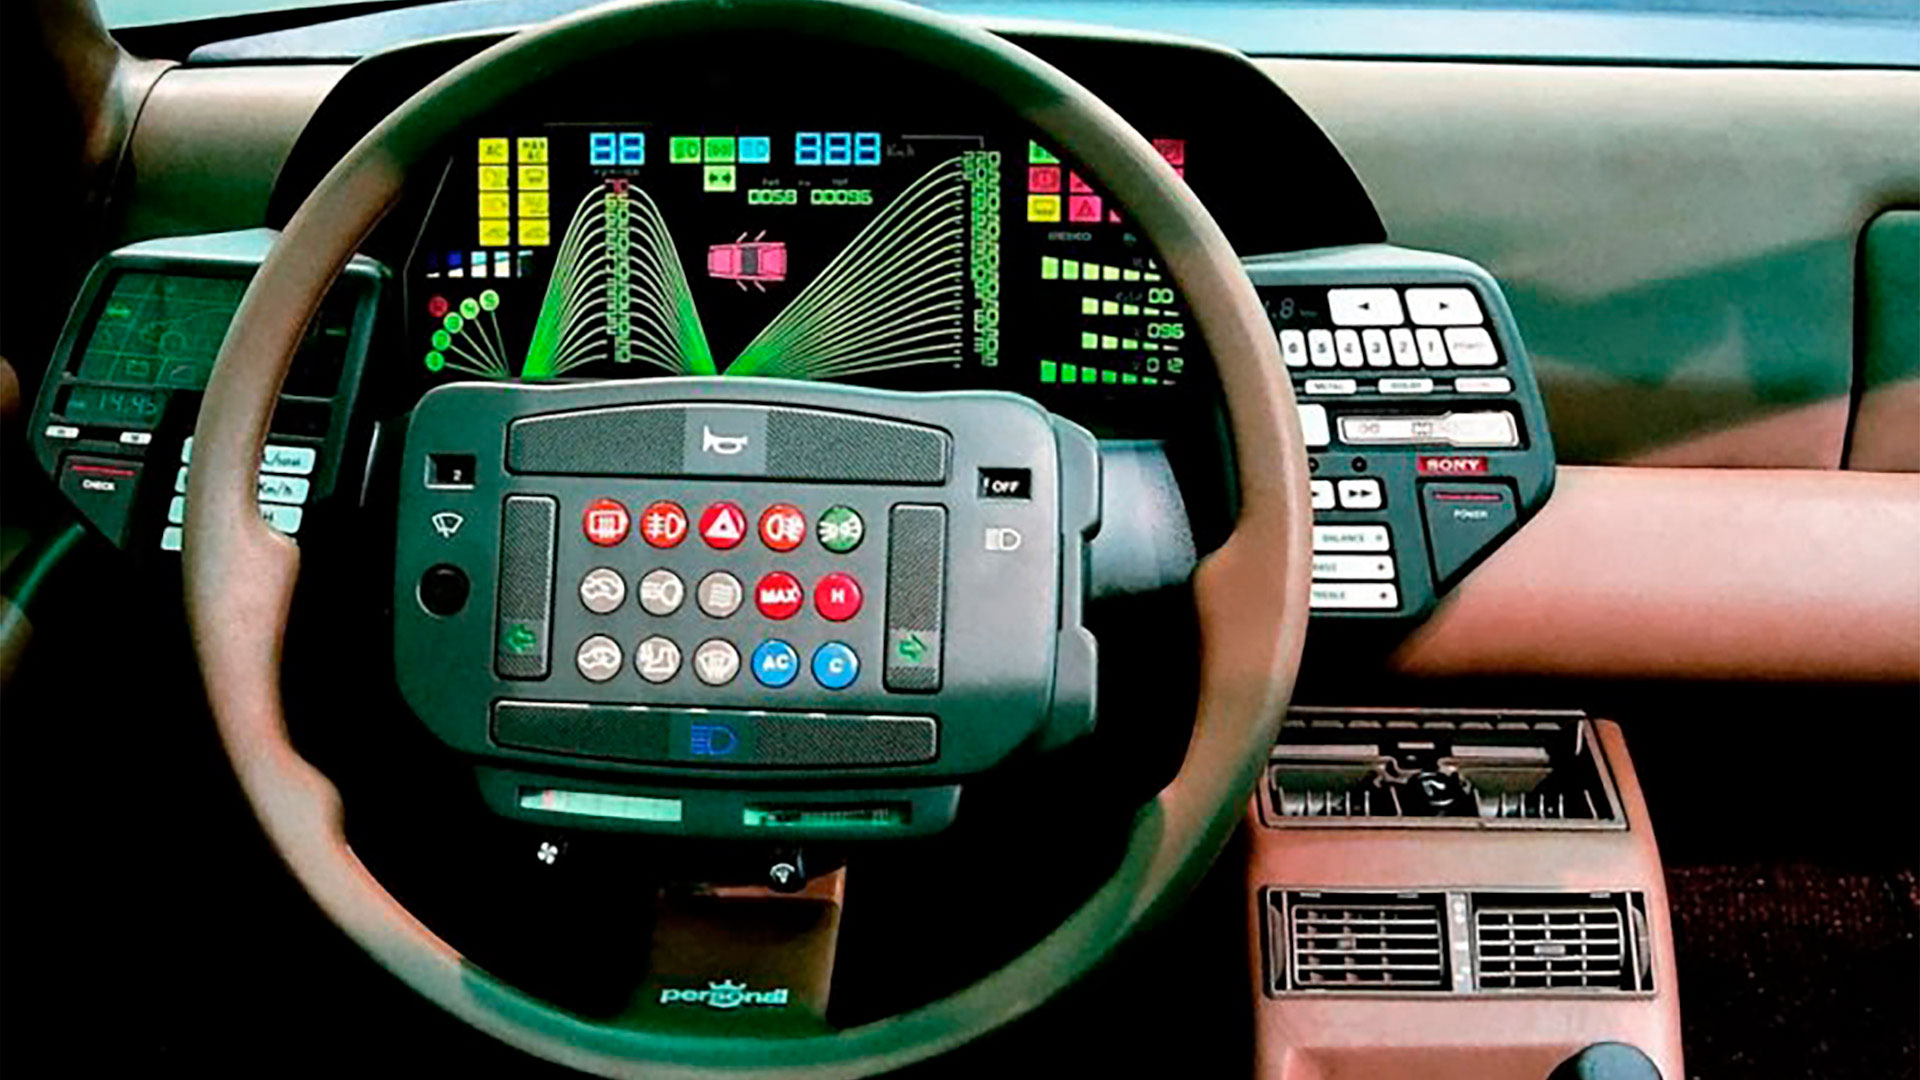 Luces, display y botones. La norma de los años 80 expresada en los tableros de los automóviles conceptuales